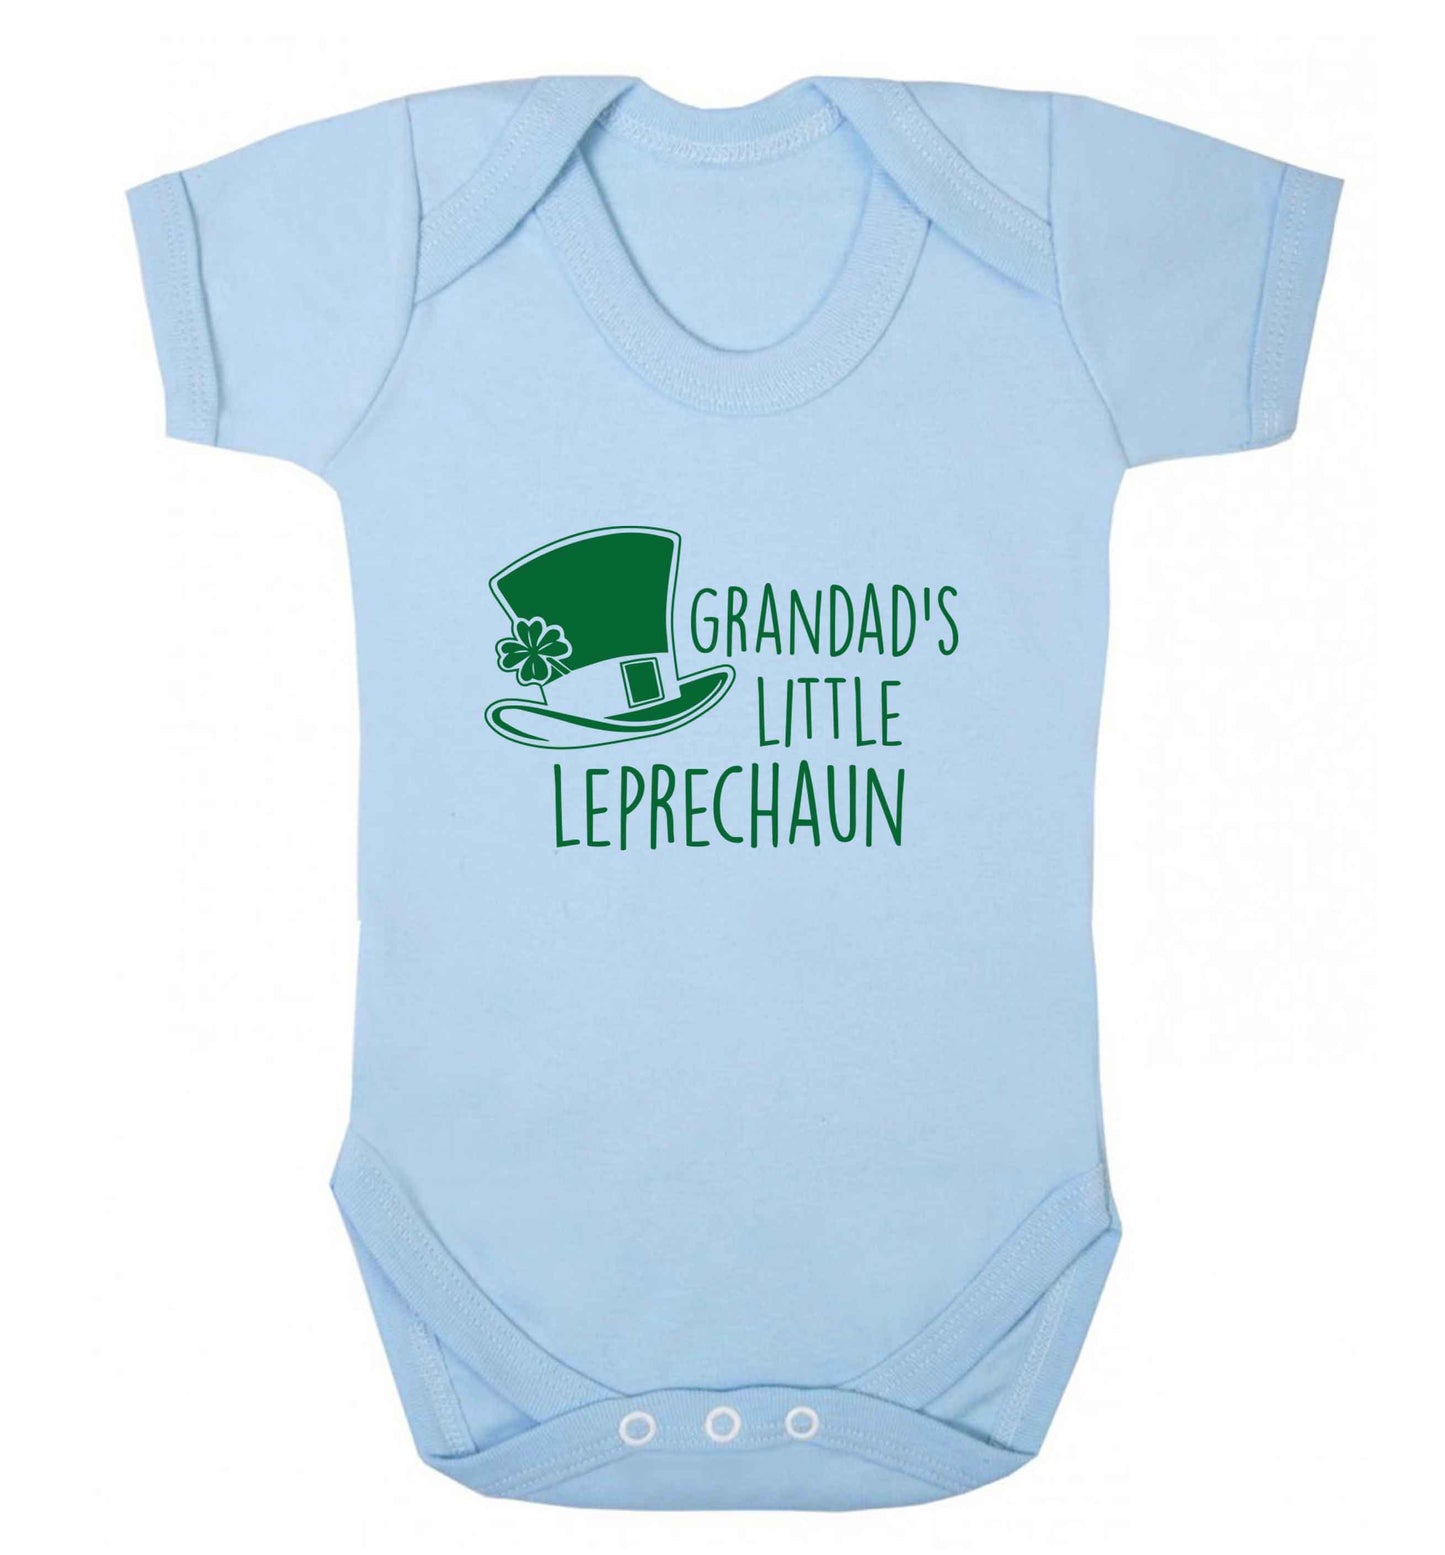 Grandad's little leprechaun baby vest pale blue 18-24 months